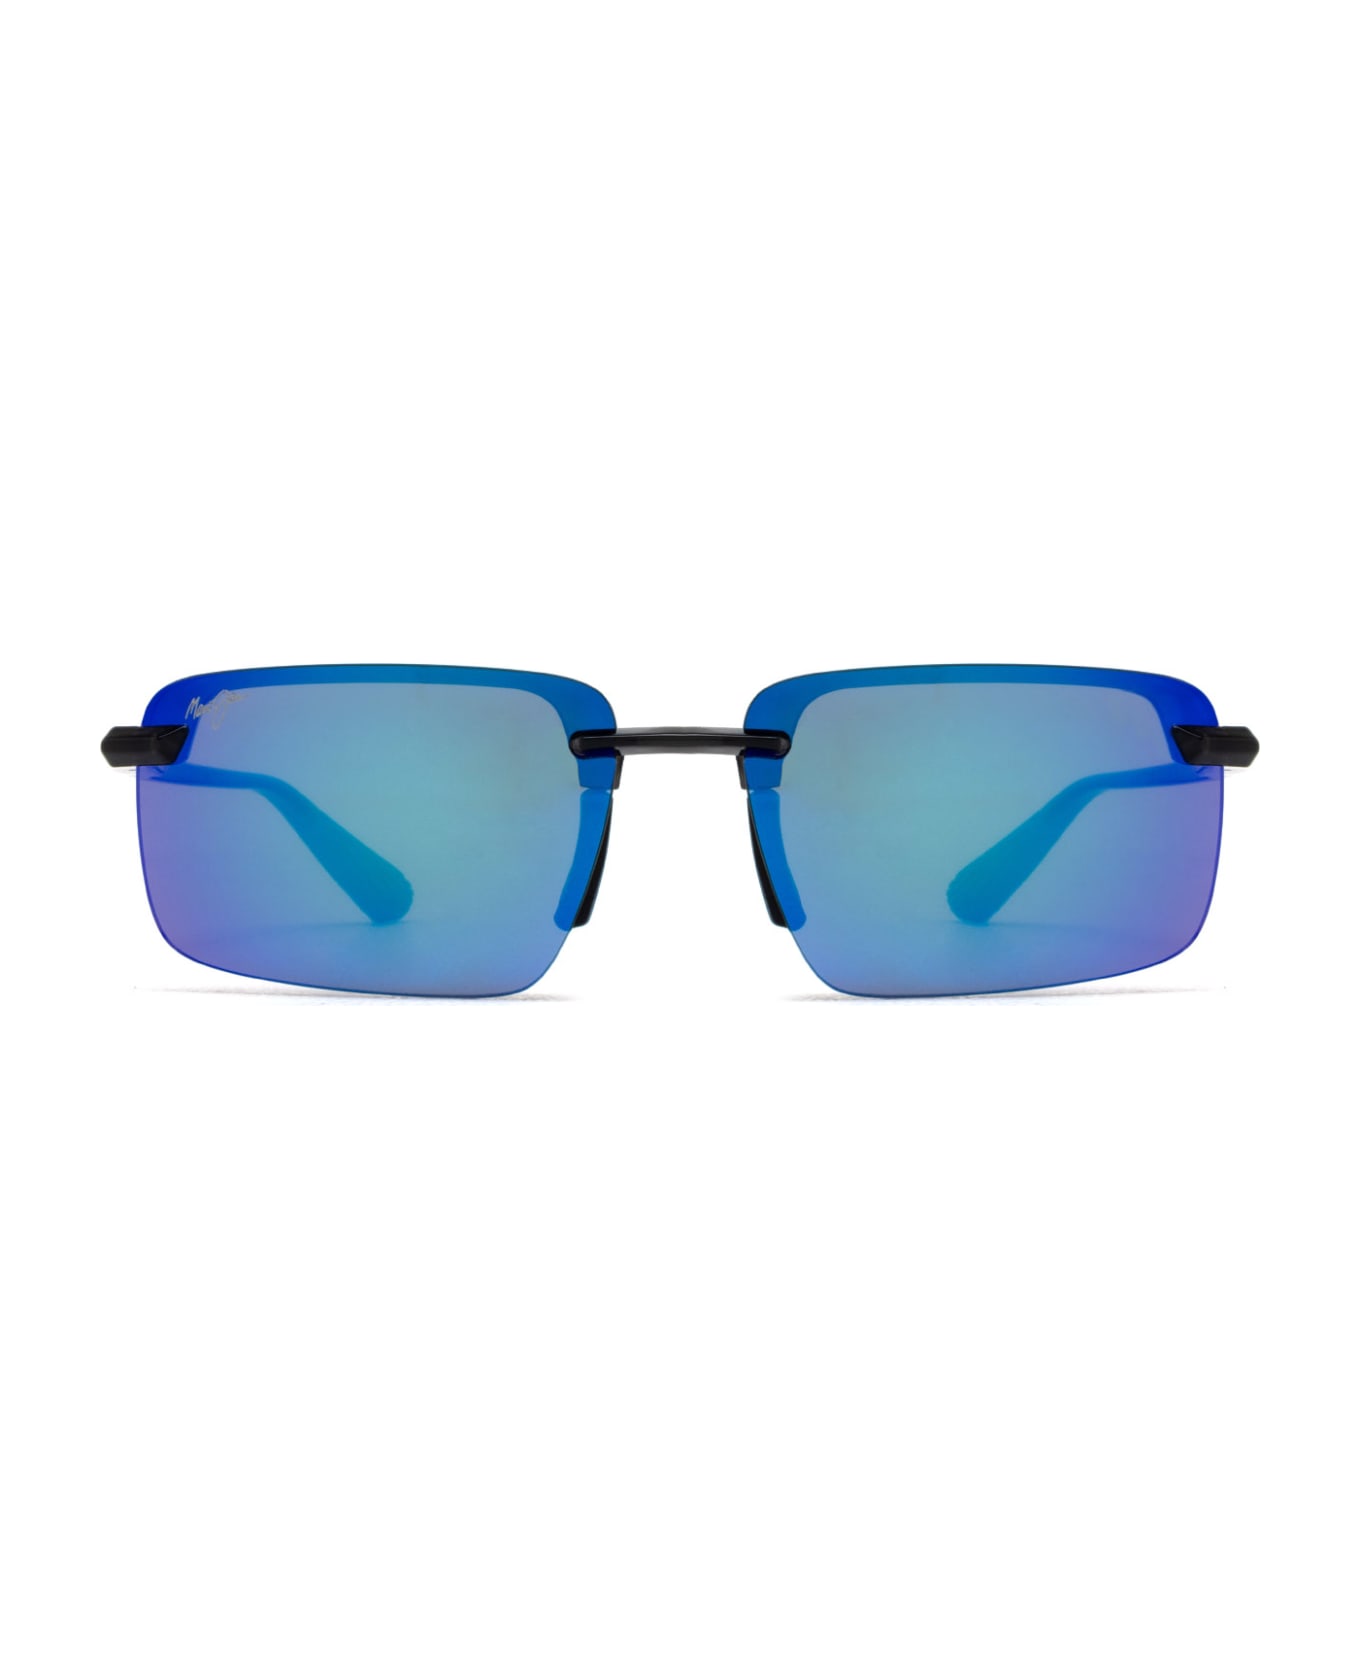 Maui Jim Mj626 Shiny Transparent Dark Grey Sunglasses - Shiny Transparent Dark Grey サングラス